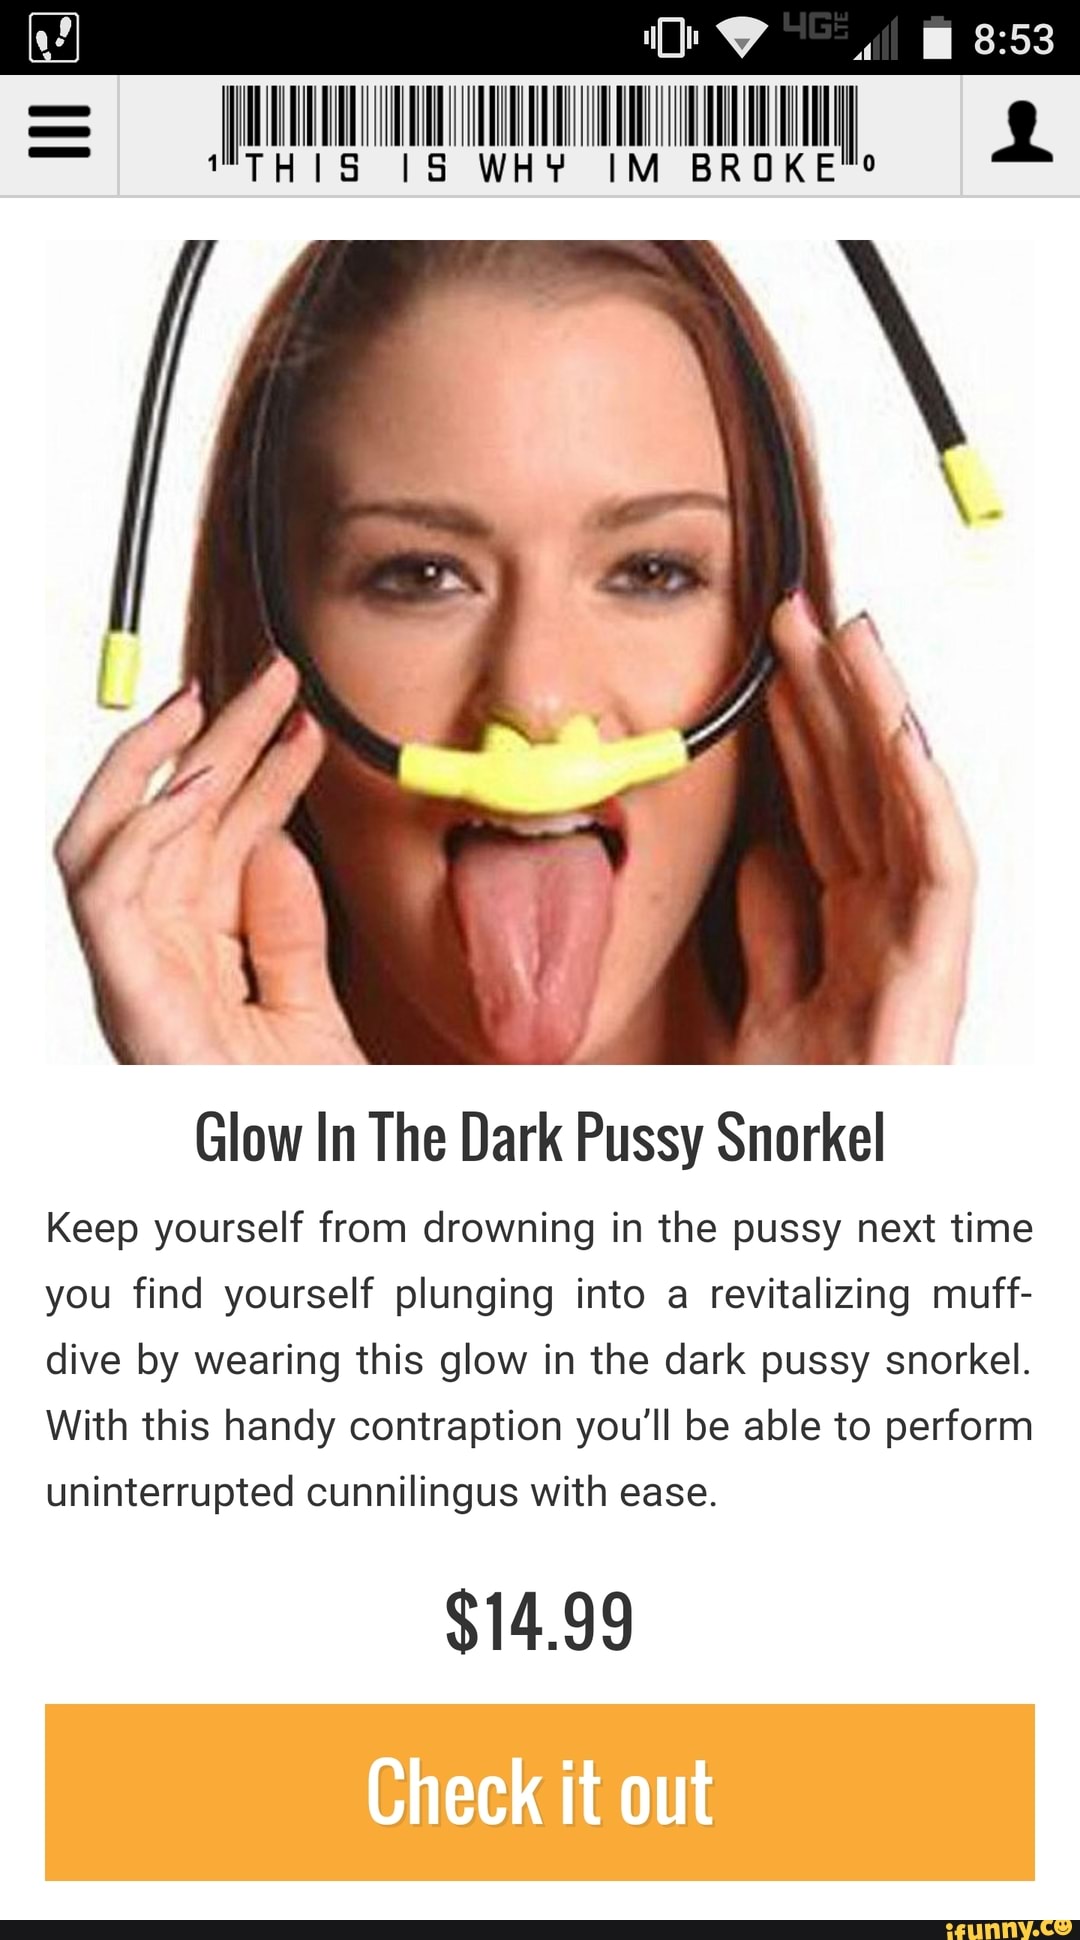 angelica dejesus recommends Glow In The Dark Pussy Snorkel